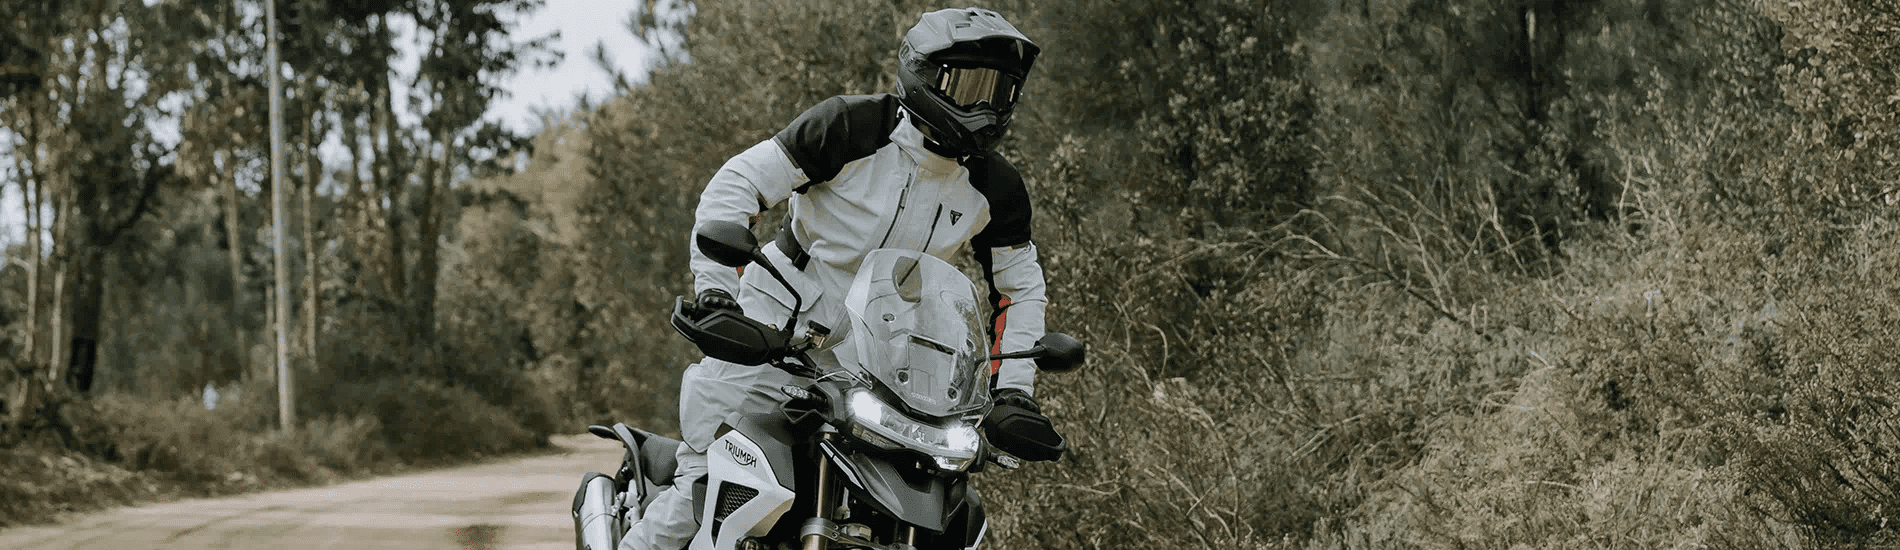 Landing Page - Enduro Rider Tiger 1200)